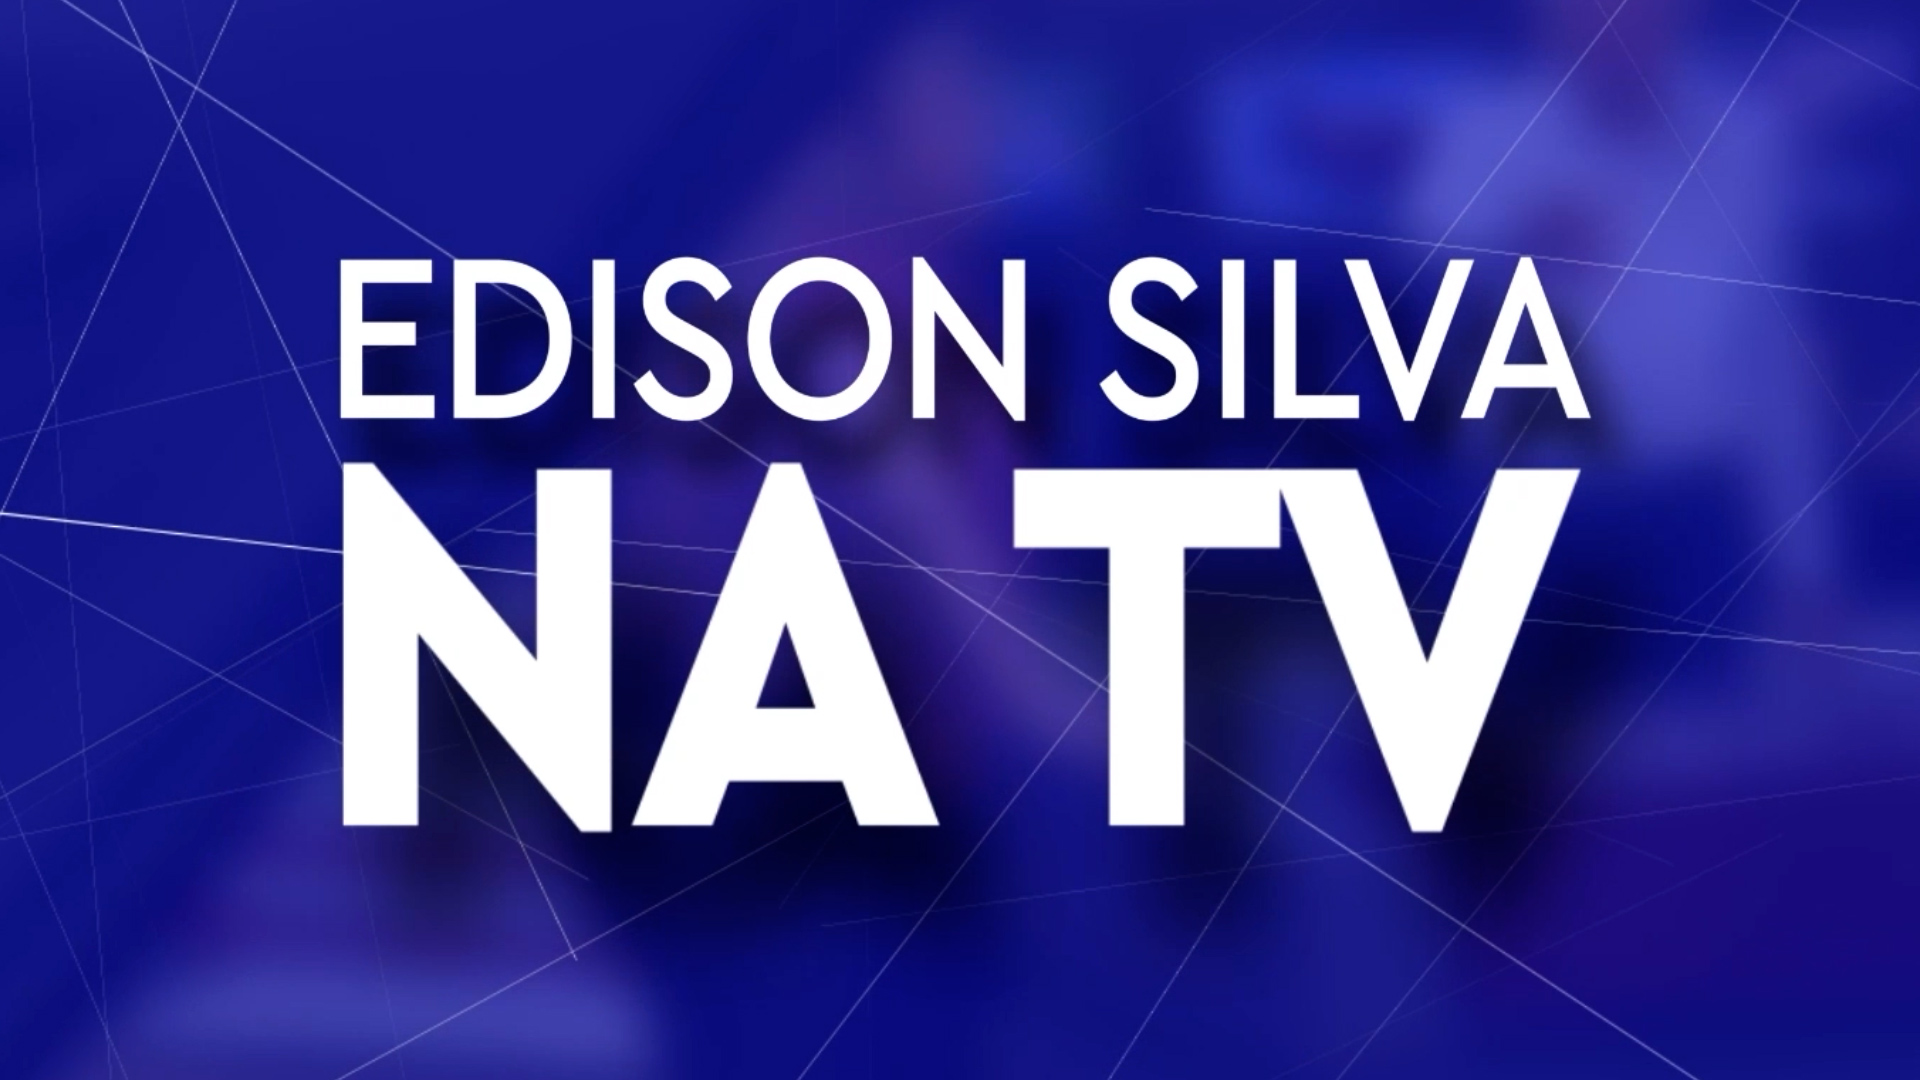 Senadores aprovaram a emenda a constituição nesta quarta-feira (22) – Edison Silva na Tv 23/11/2023